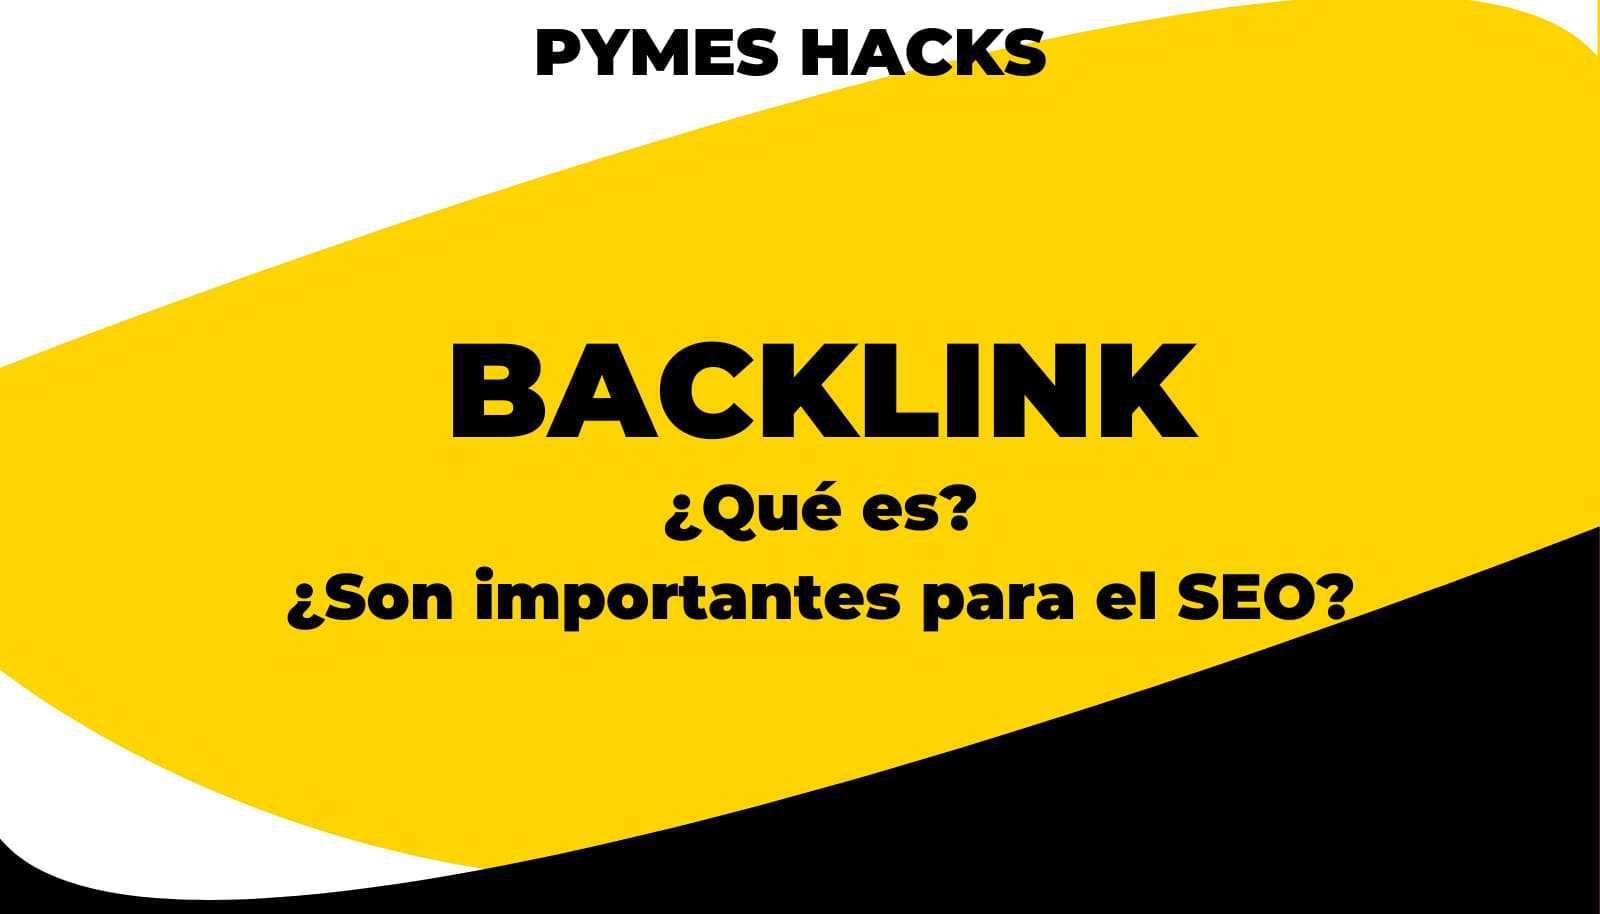 Backlink: ¿Qué es? ¿Son importantes para el SEO?